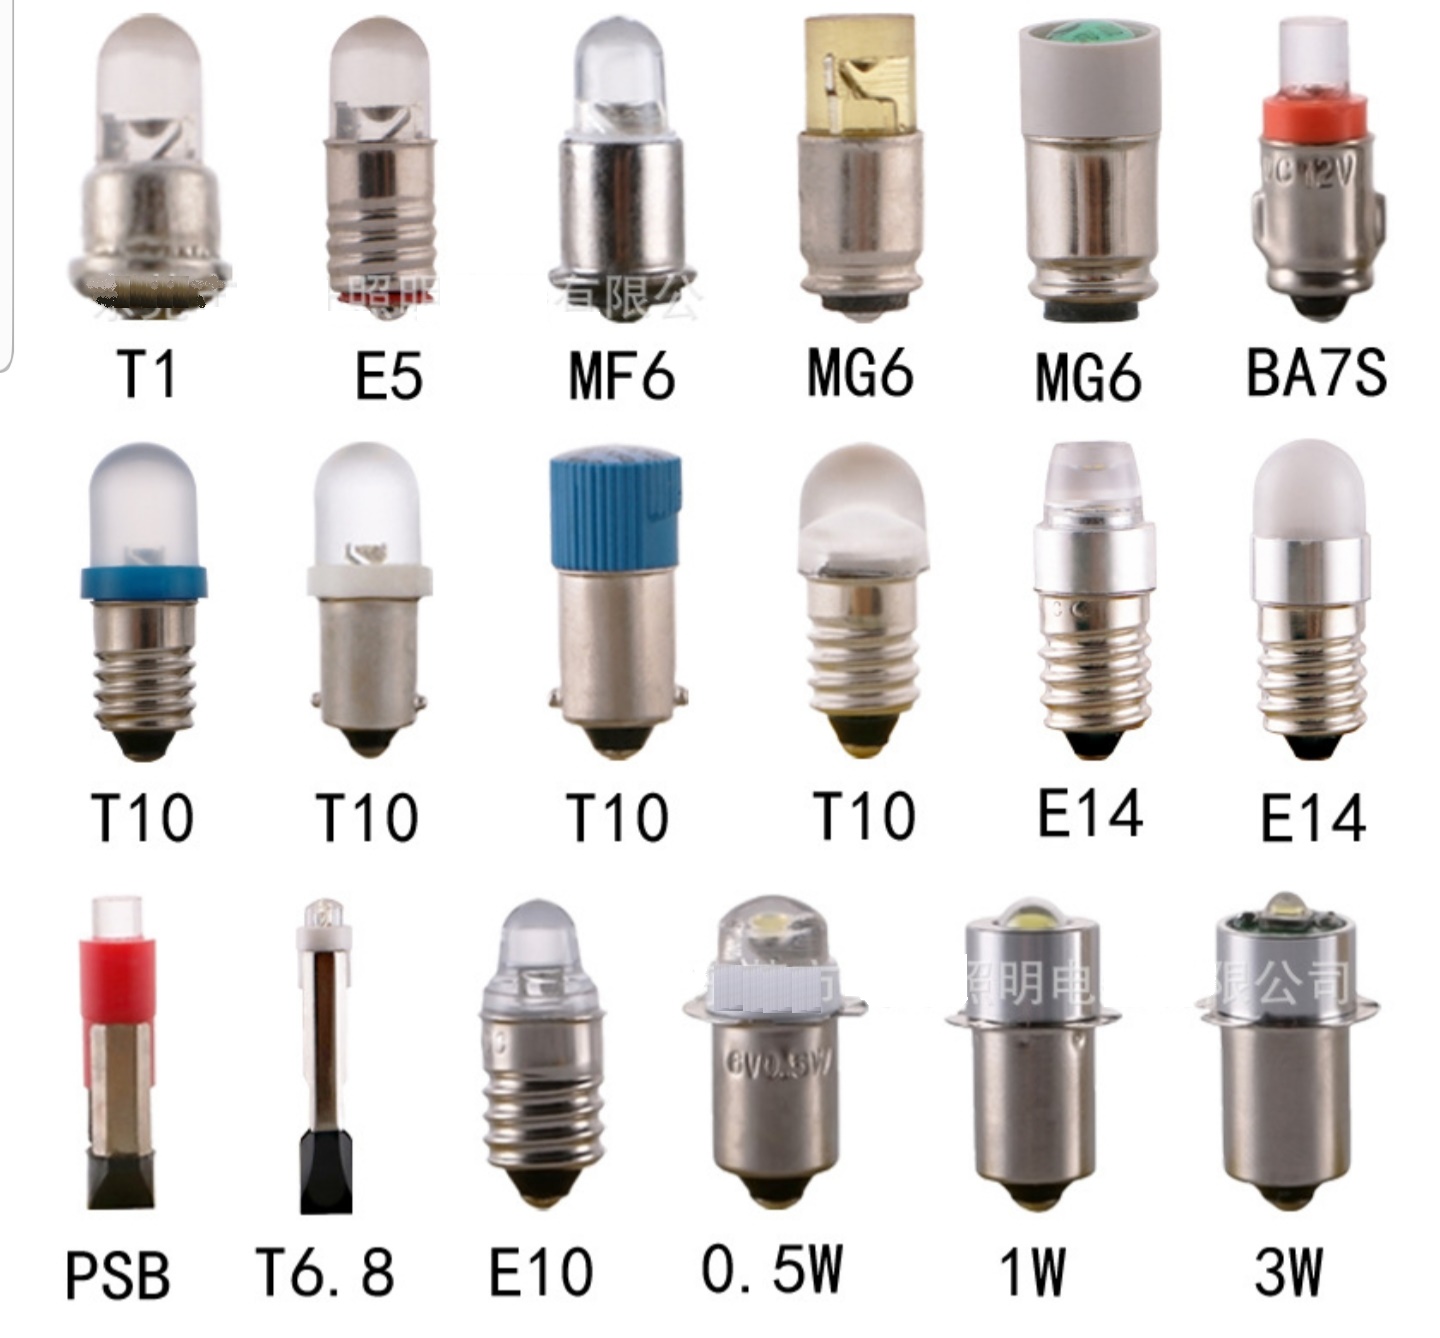 https://www.ledlightbulb.net/images/categories/Miniature-LED-Bulb-Mini-led-bulb.jpg